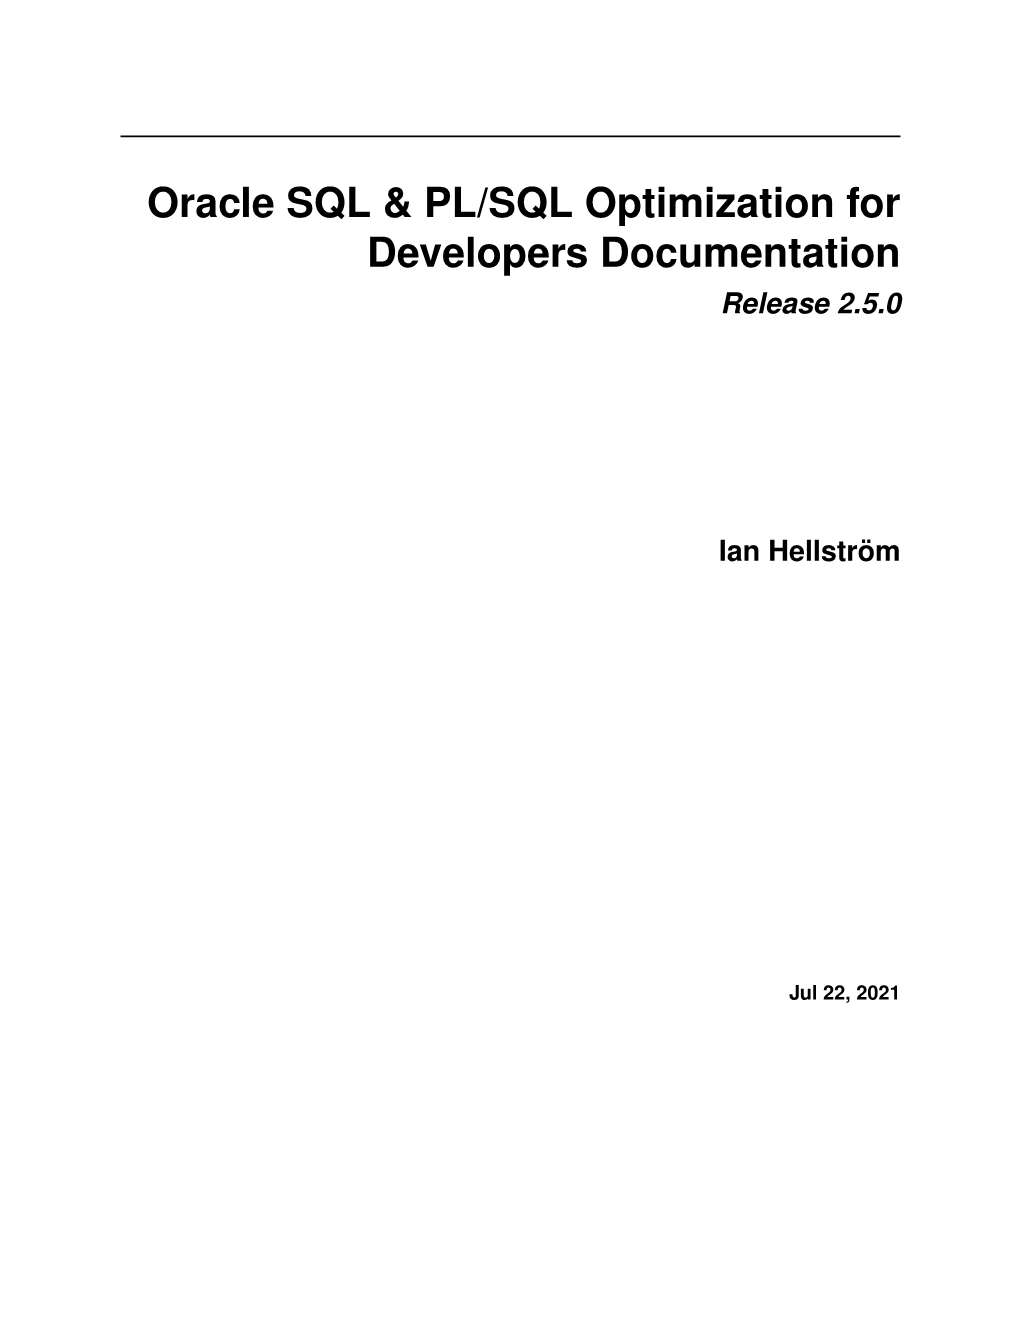 Oracle SQL & PL/SQL Optimization for Developers Documentation